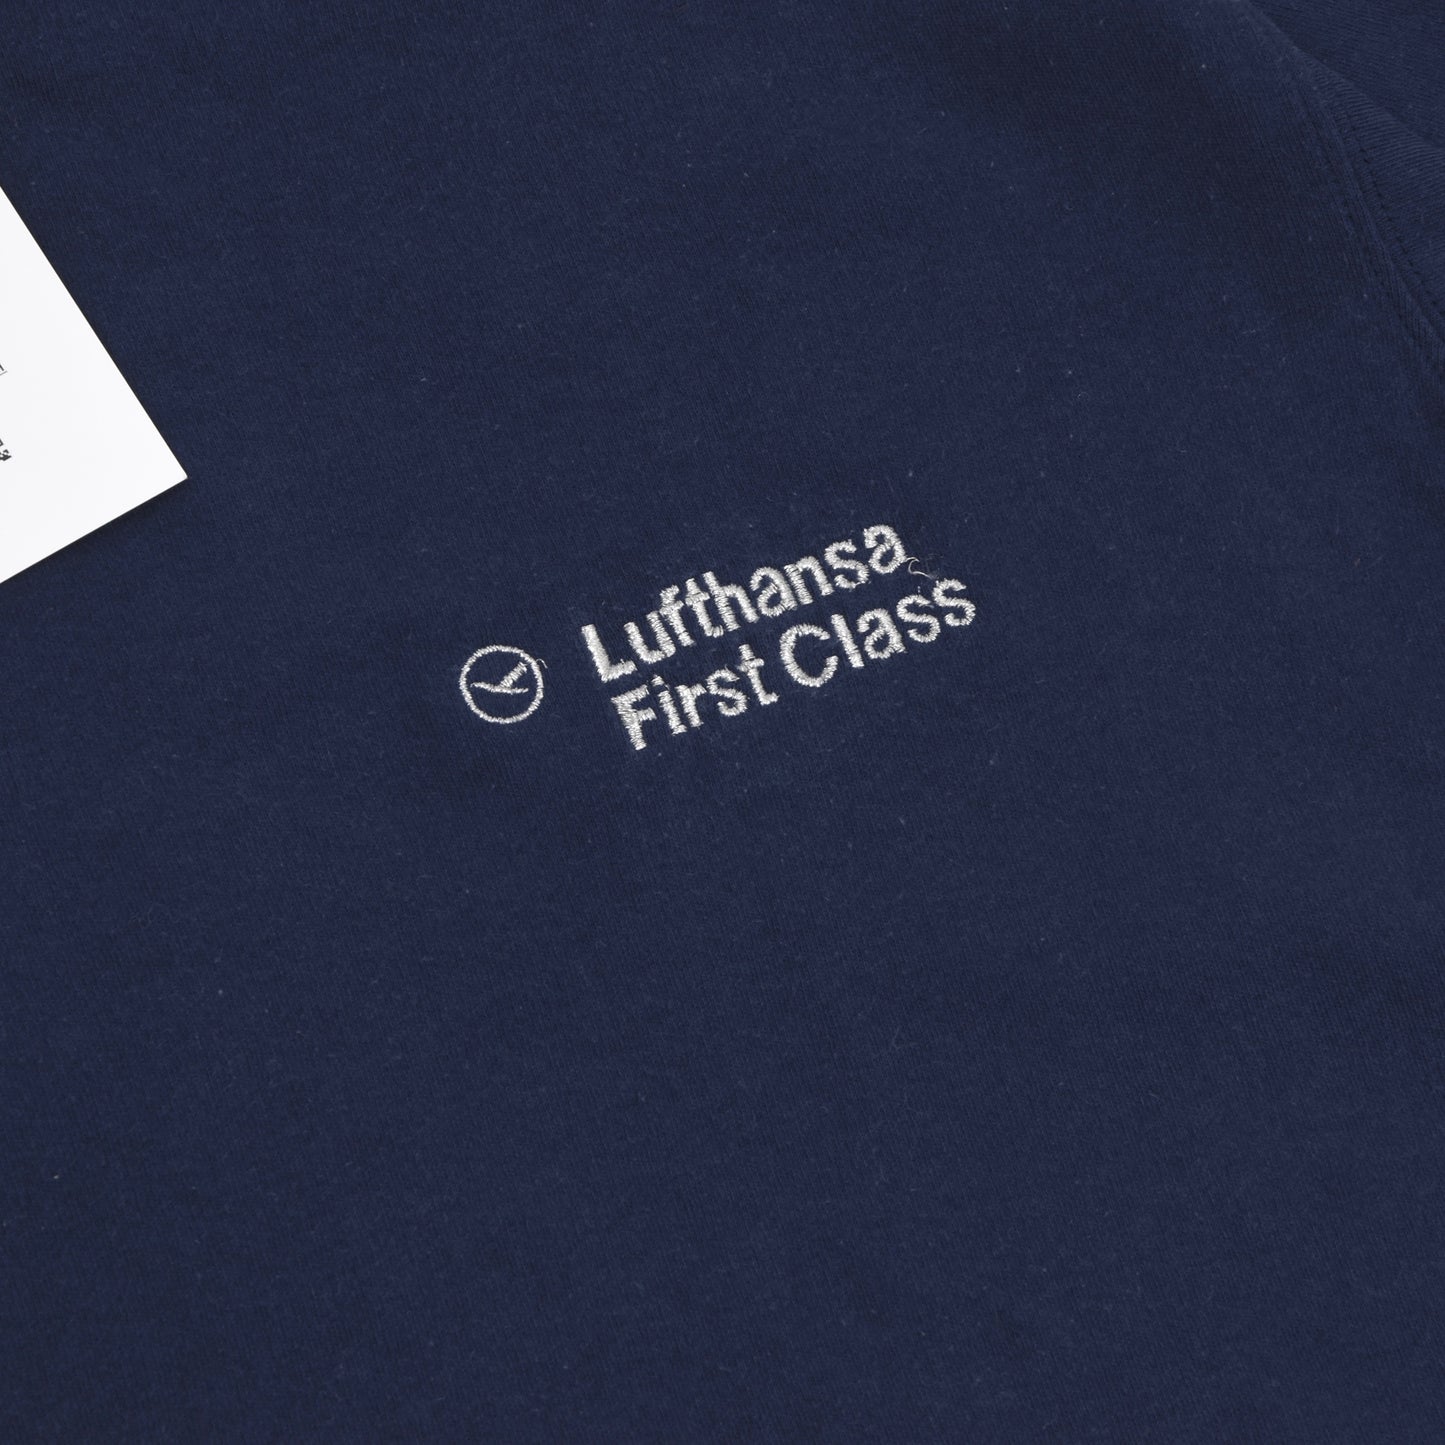 2x Lufthansa First Class/Bogner Cotton Sweatshirts/Tops Größe 54/XL - Marineblau